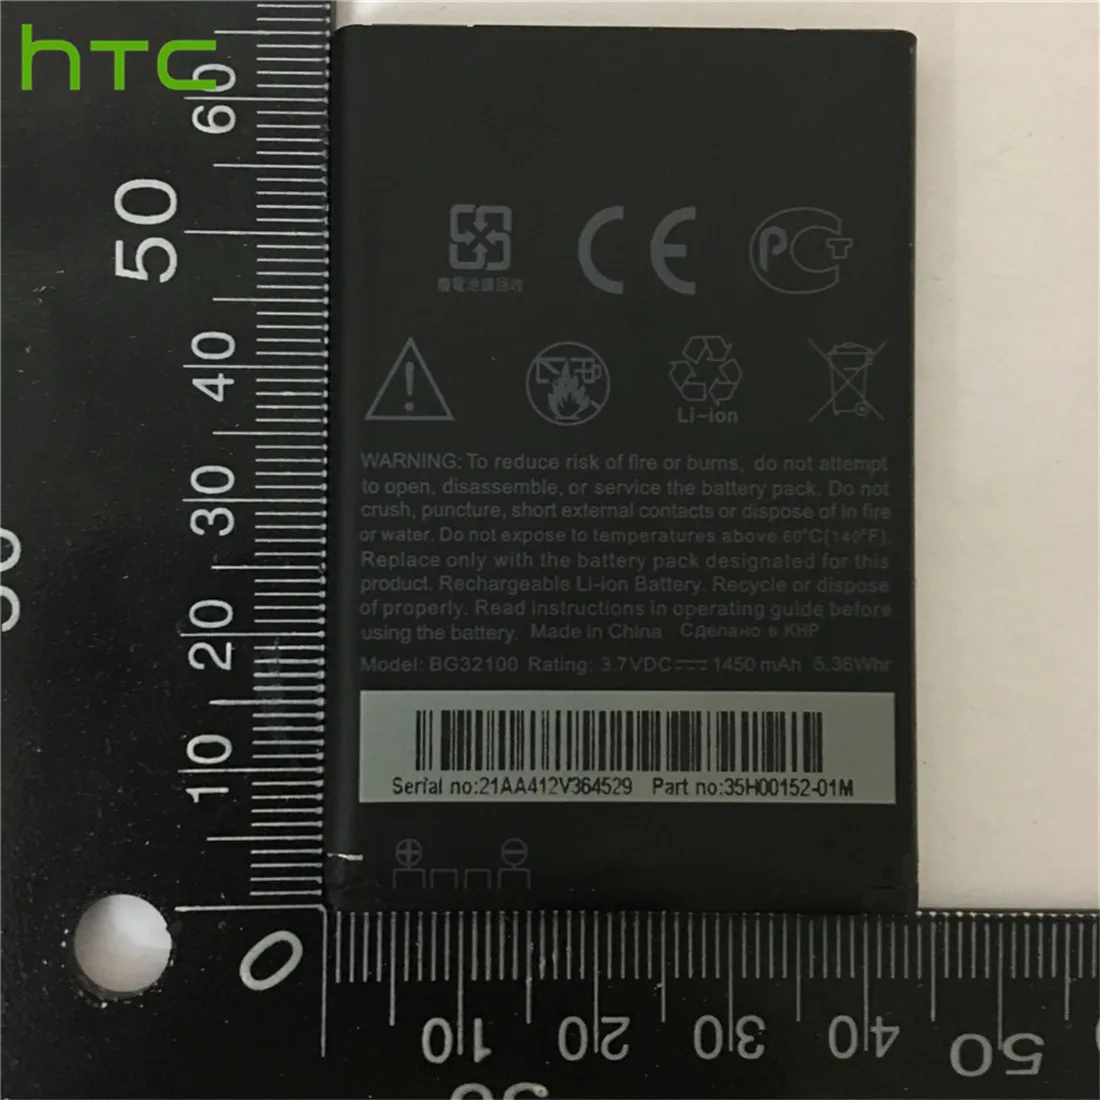 

100% новый высококачественный аккумулятор BG32100 1450 мАч для смартфона HTC G11 Incredible S G12 G15 Desire s S510E S710e S710D C510e